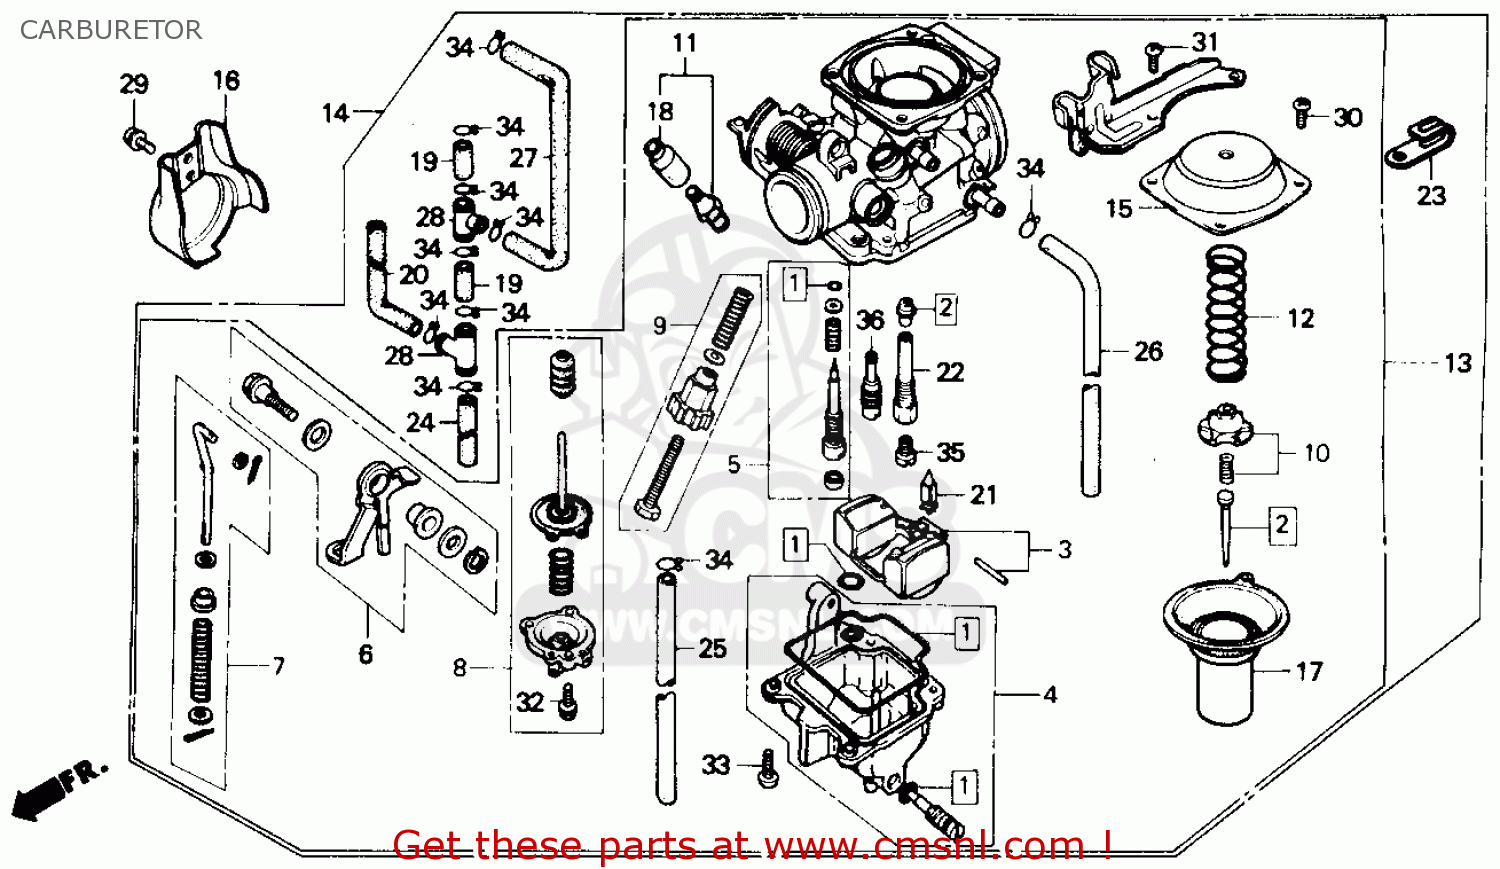 1985 Honda rebel carb rebuild kit #3